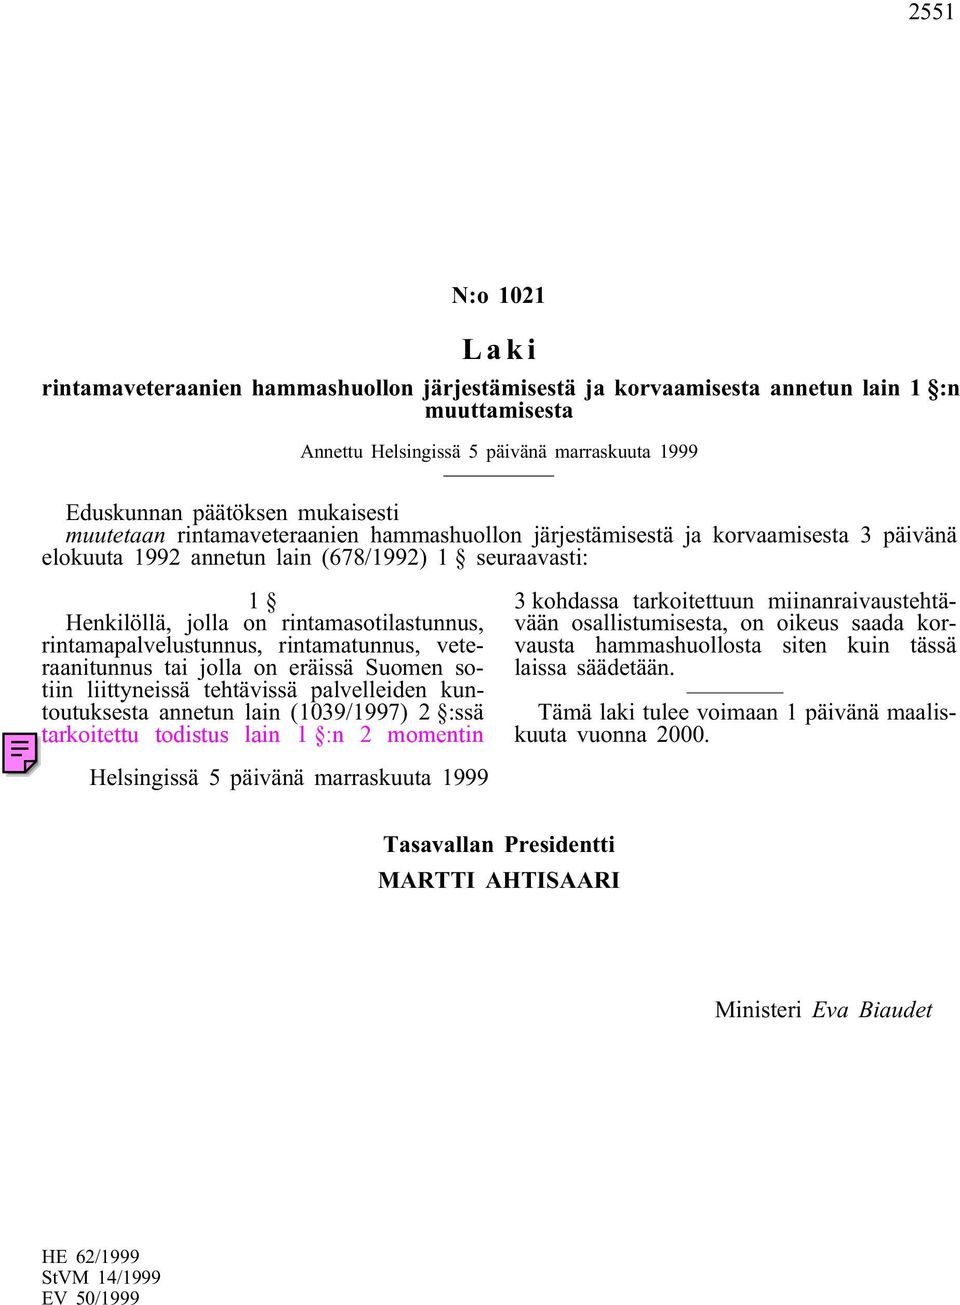 veteraanitunnus tai jolla on eräissä Suomen sotiin liittyneissä tehtävissä palvelleiden kuntoutuksesta annetun lain (1039/1997) 2 :ssä tarkoitettu todistus lain 1 :n 2 momentin 3 kohdassa